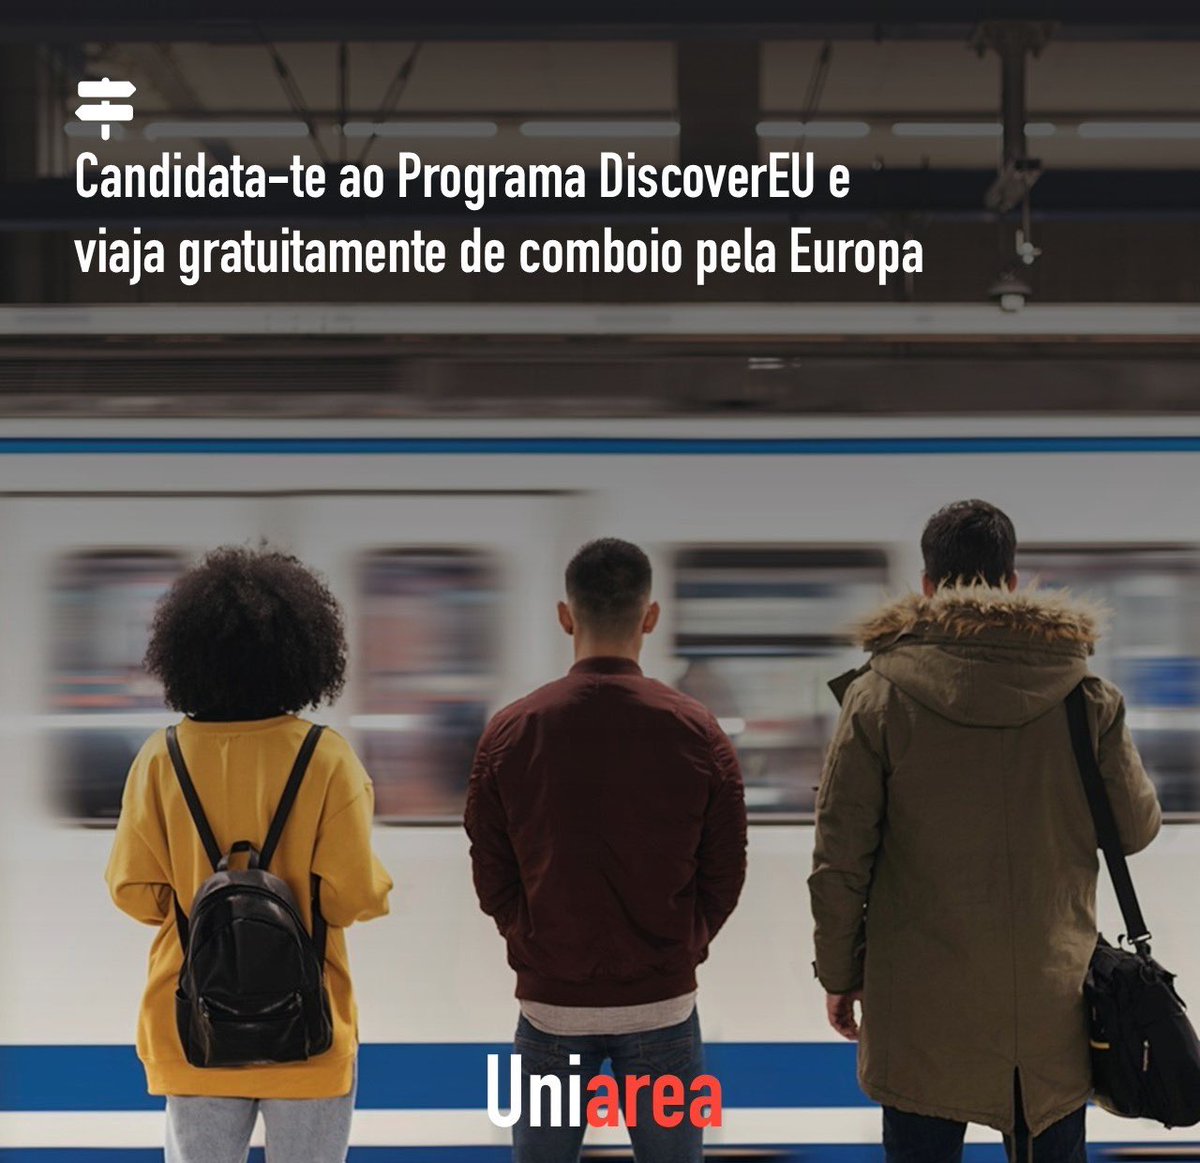 🗺️ Estão abertas até ao dia 30 de abril as candidaturas ao programa DiscoverEU, a iniciativa da Comissão Europeia (@CE_PTrep) , dirigida a todos os jovens de 18 anos, que te permite viajar gratuitamente pela Europa: uniarea.com/candidata-te-a…